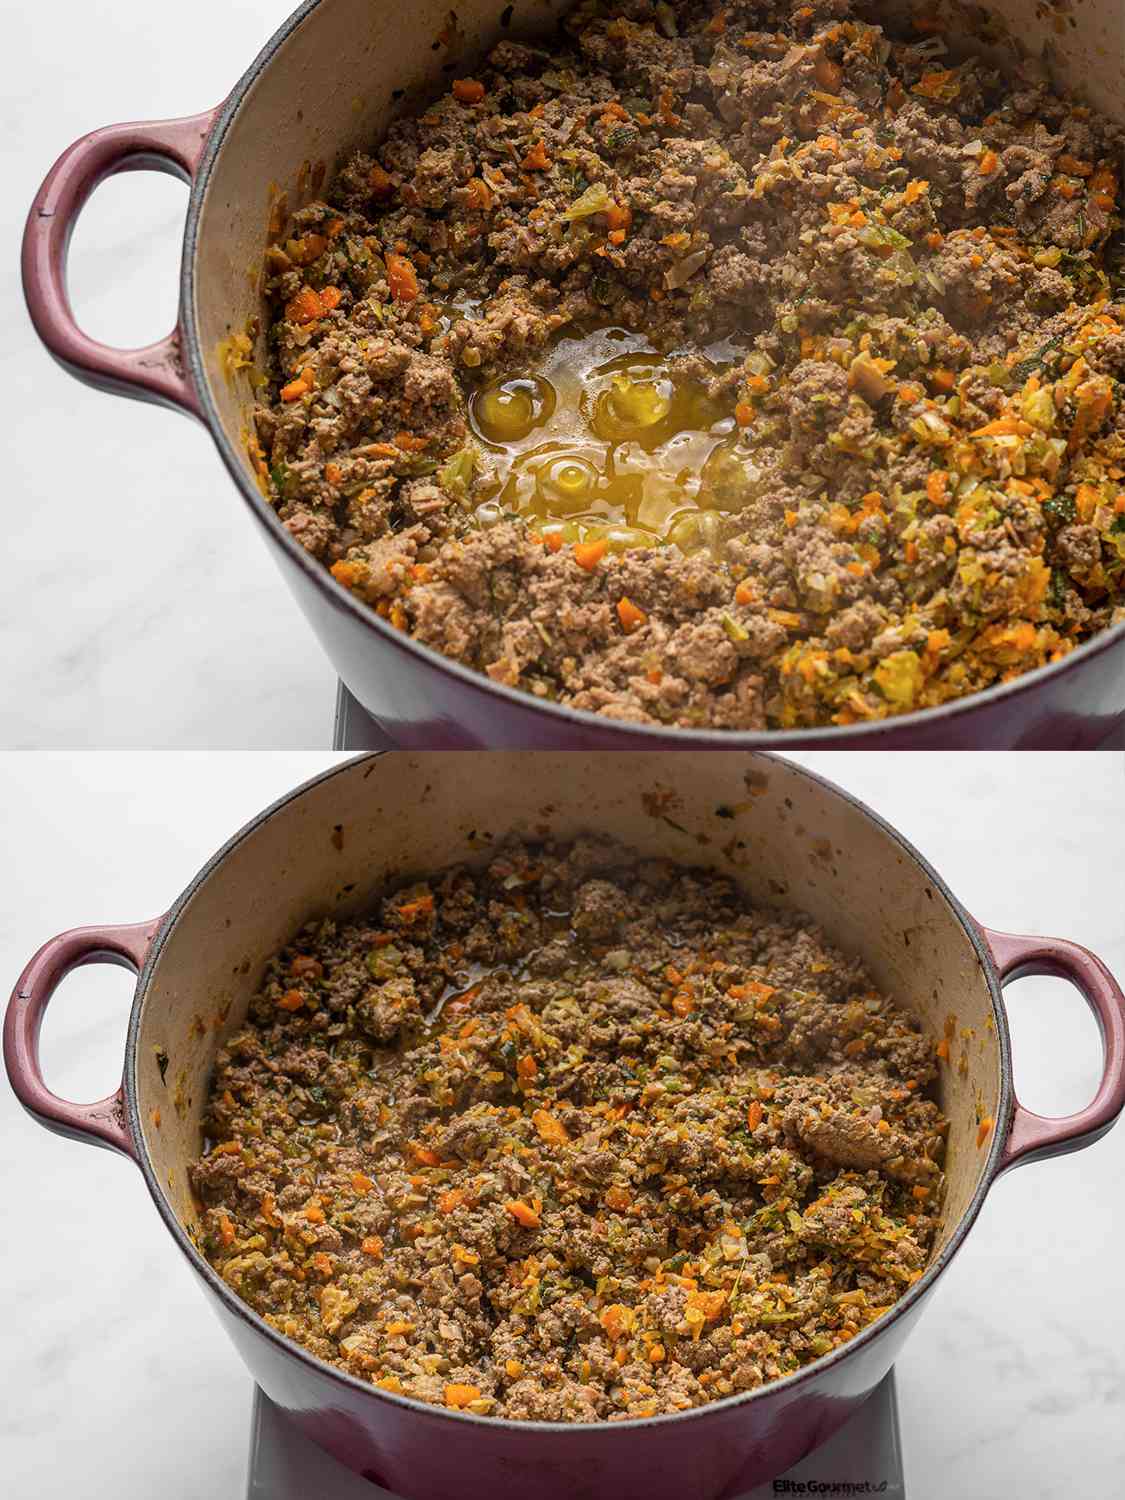 两幅图像的拼贴画。上图是在荷兰烤箱中，将煮熟的蔬菜和熏肉加入到混合肉中。下面的图片显示了荷兰烤箱，大部分液体从肉混合物中蒸发出来。gydF4y2Ba